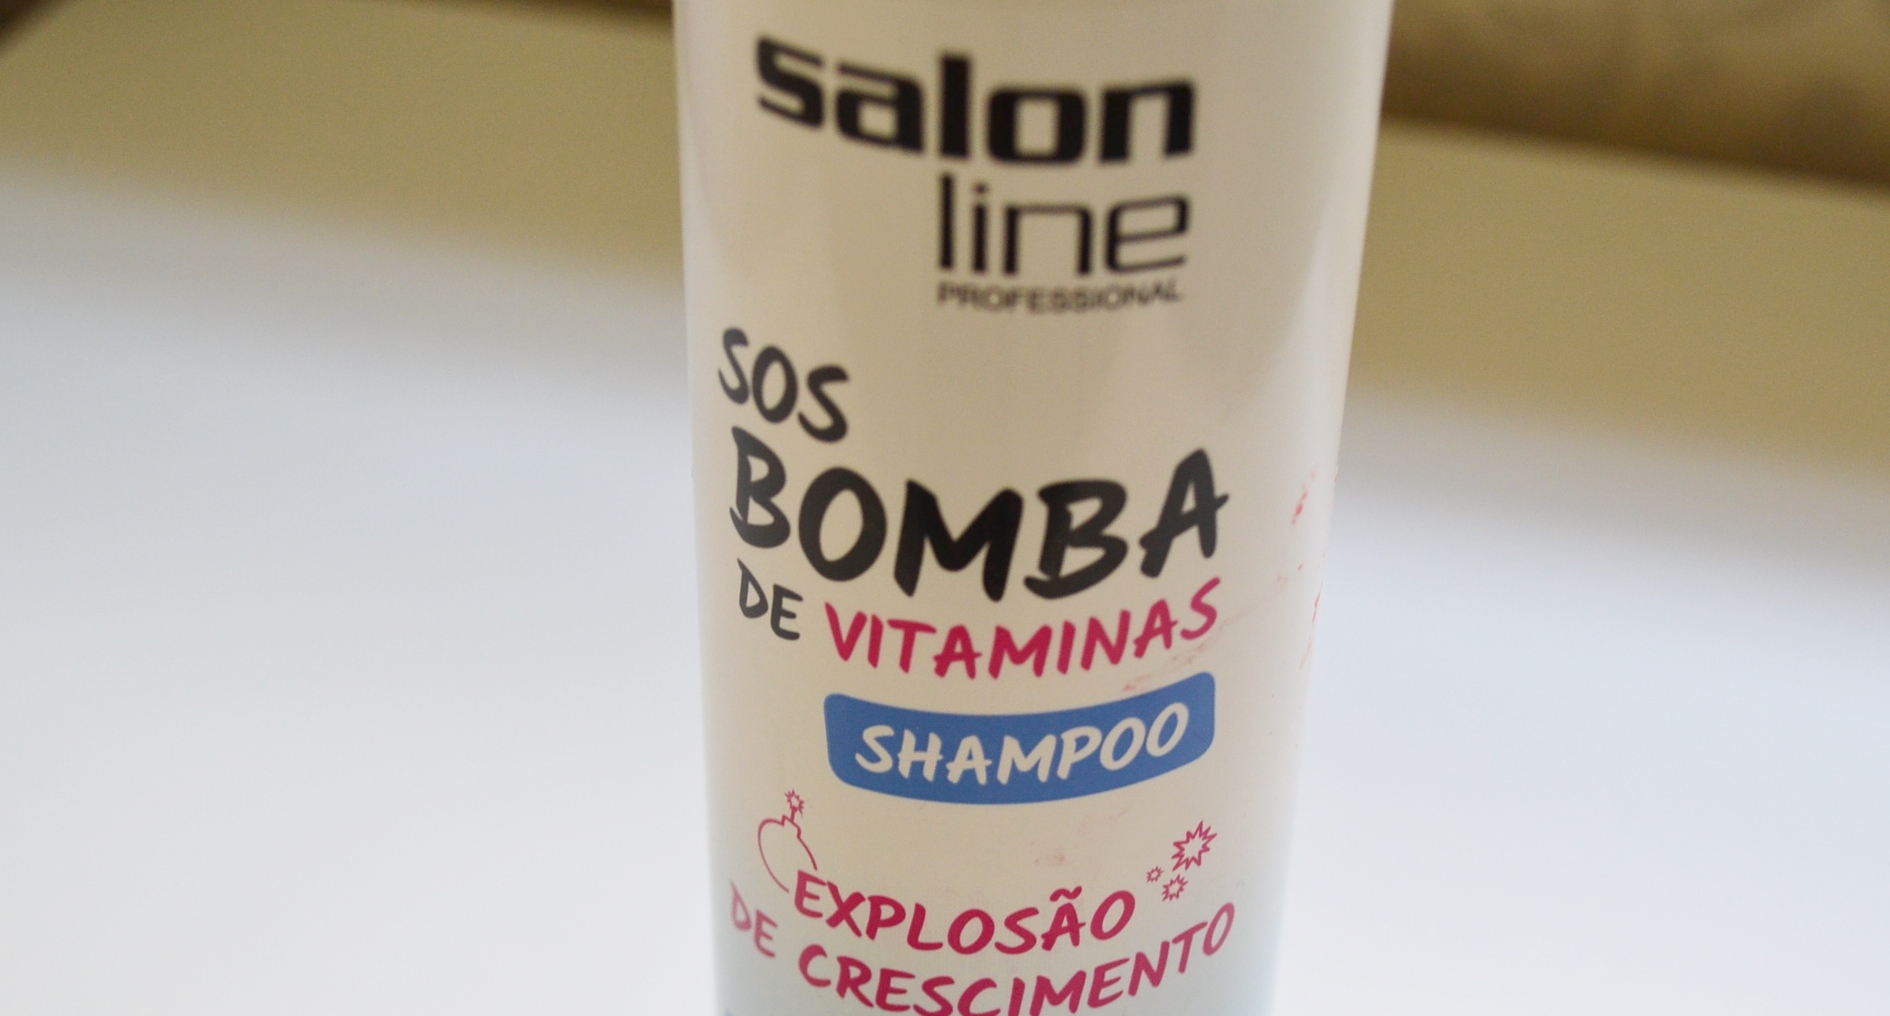 Shampoo SOS Bomba de Vitaminas Salon Line